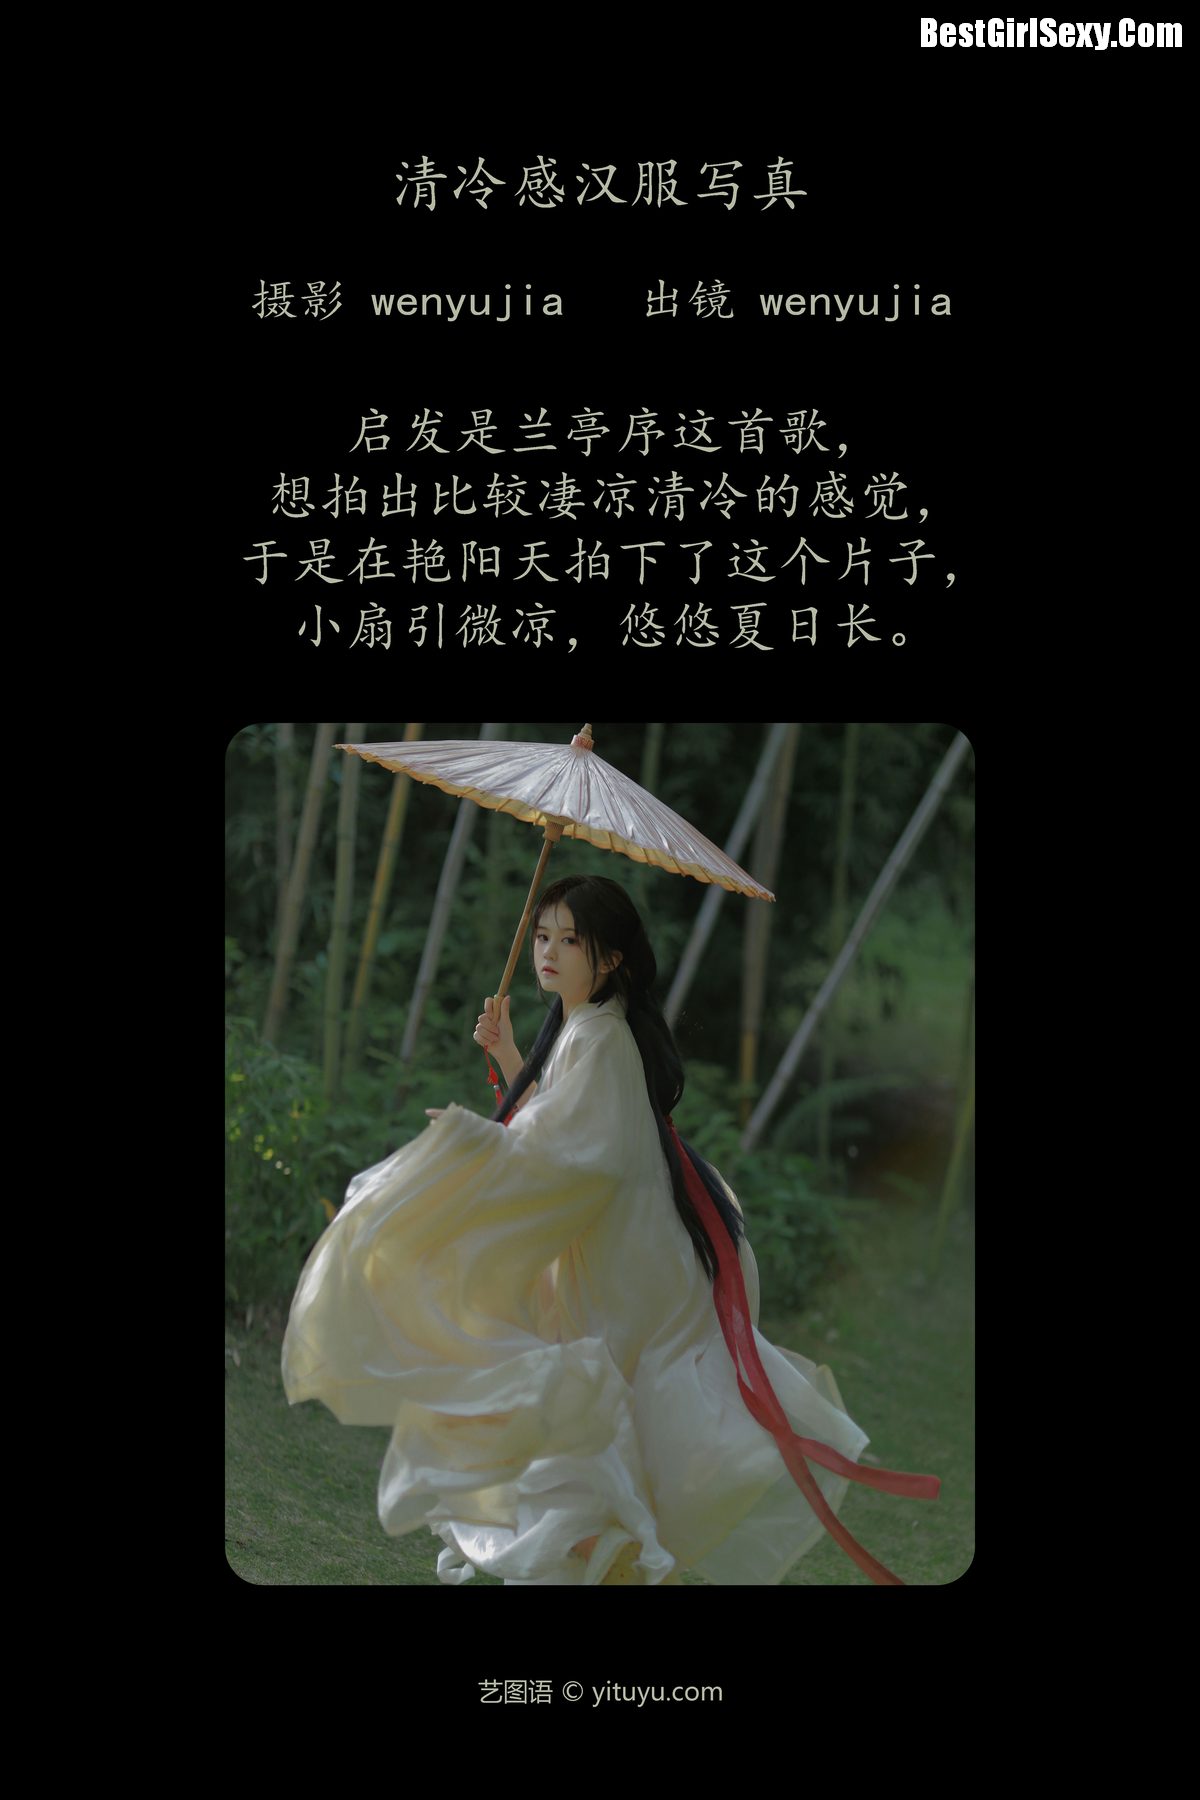 YiTuYu艺图语 Vol 3986 Wen Yu Jia 0001 5941160590.jpg